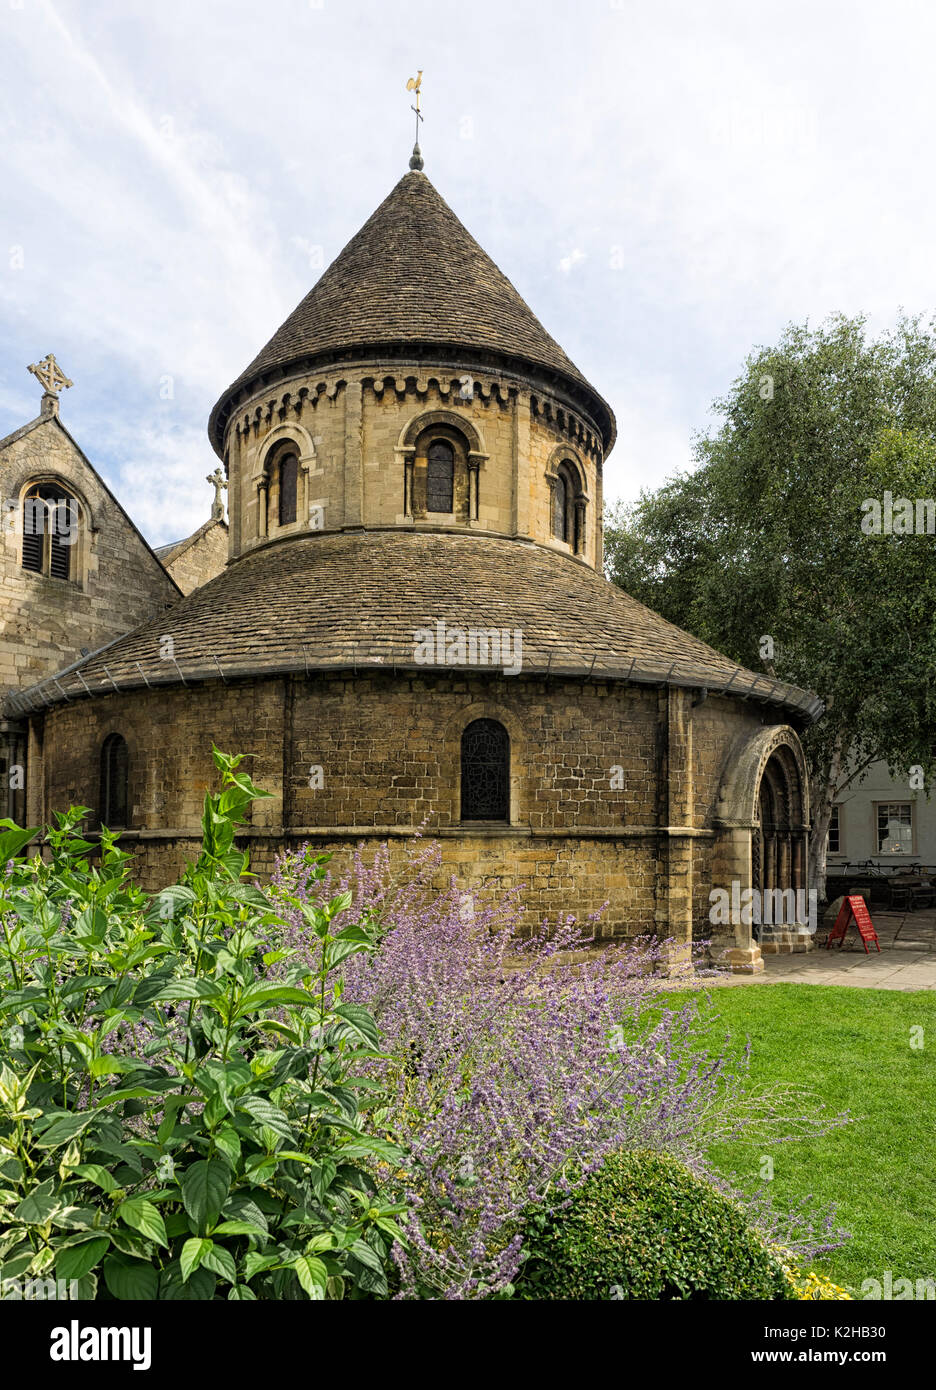 CAMBRIDGE, UK - 11 AGOSTO 2017: La Chiesa del Santo Sepolcro, comunemente conosciuta come la Chiesa rotonda Foto Stock